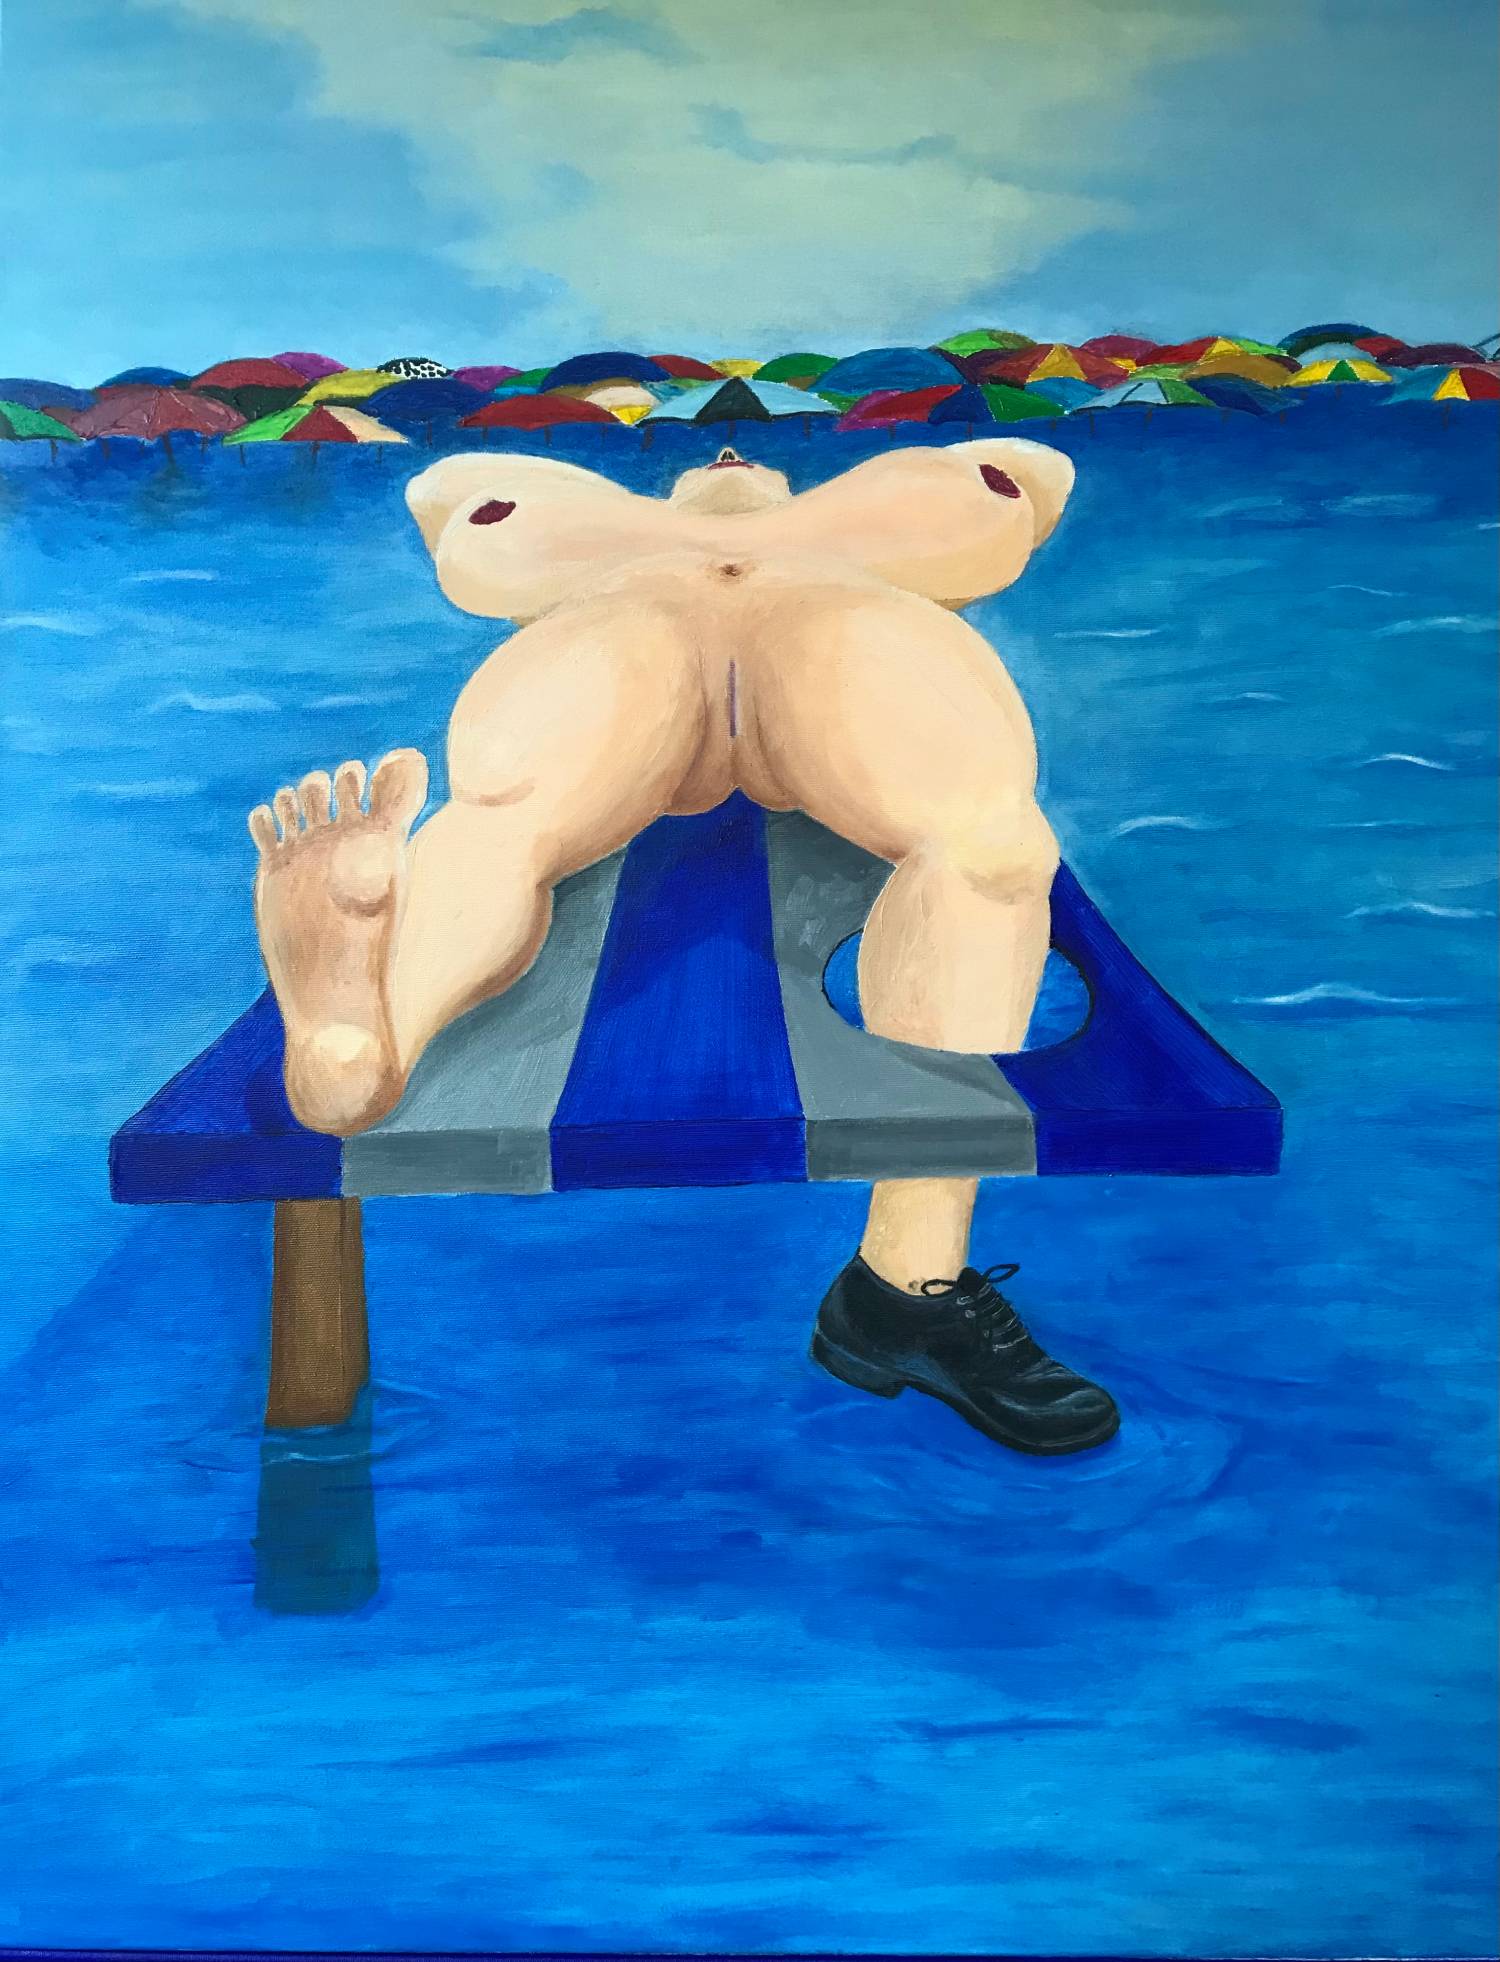 Vendita online opera di pittura a olio dal titolo "Nudo equilibrio" realizzata dall'artista contemporaneo Francesco Diana